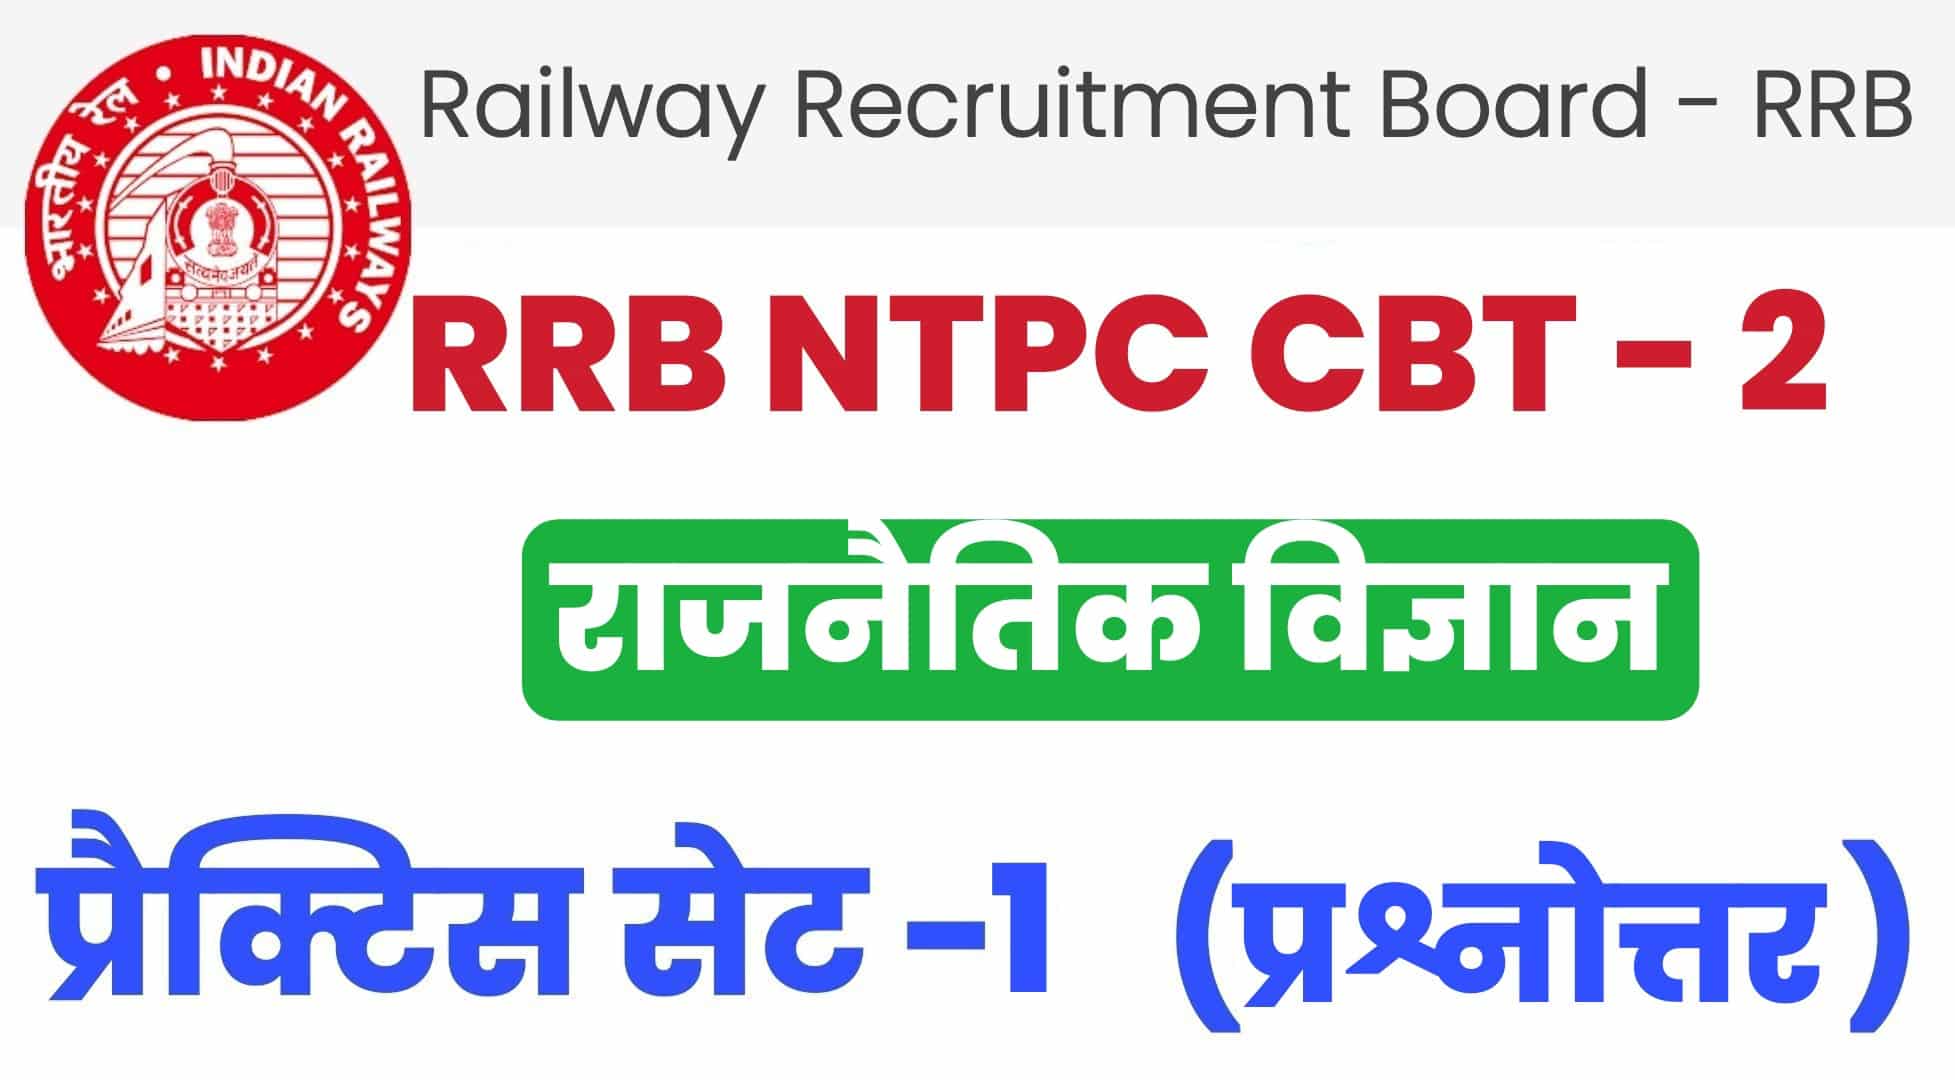 RRB NTPC CBT - 2  राजनैतिक विज्ञान प्रैक्टिस सेट 1: रेलवे की परीक्षा में पूछे गए भारतीय संविधान के इन प्रश्नों को जरूर पढ़ें